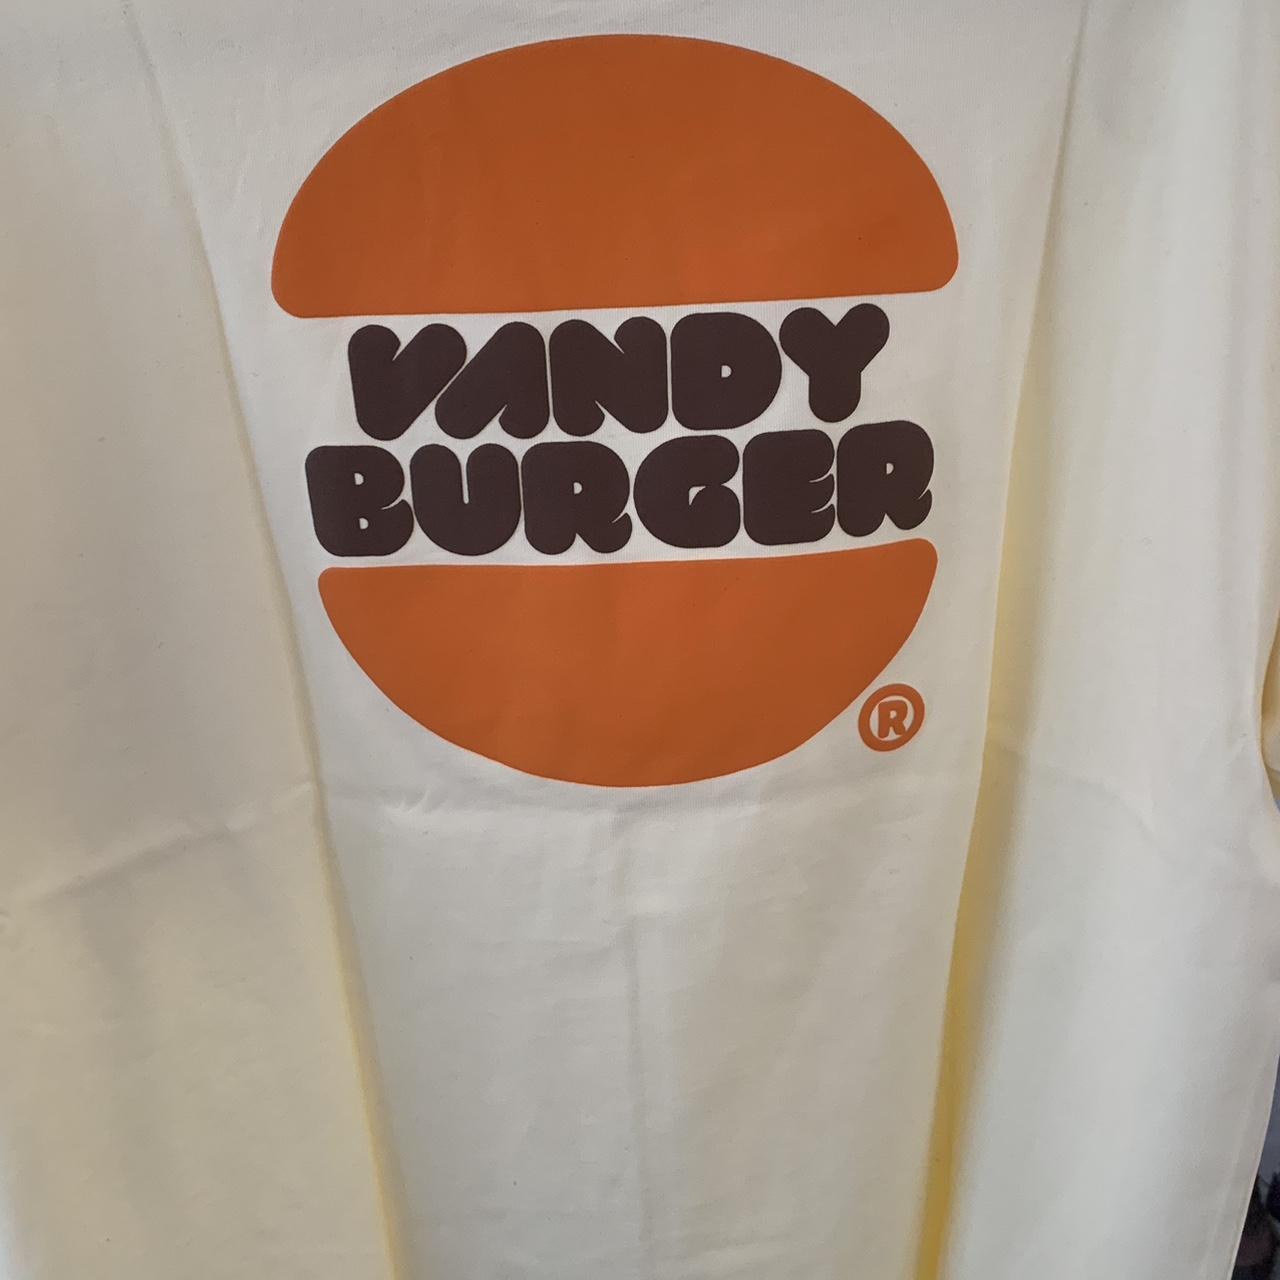 Vandy the pink burger shirt Size L #vandythepink - Depop